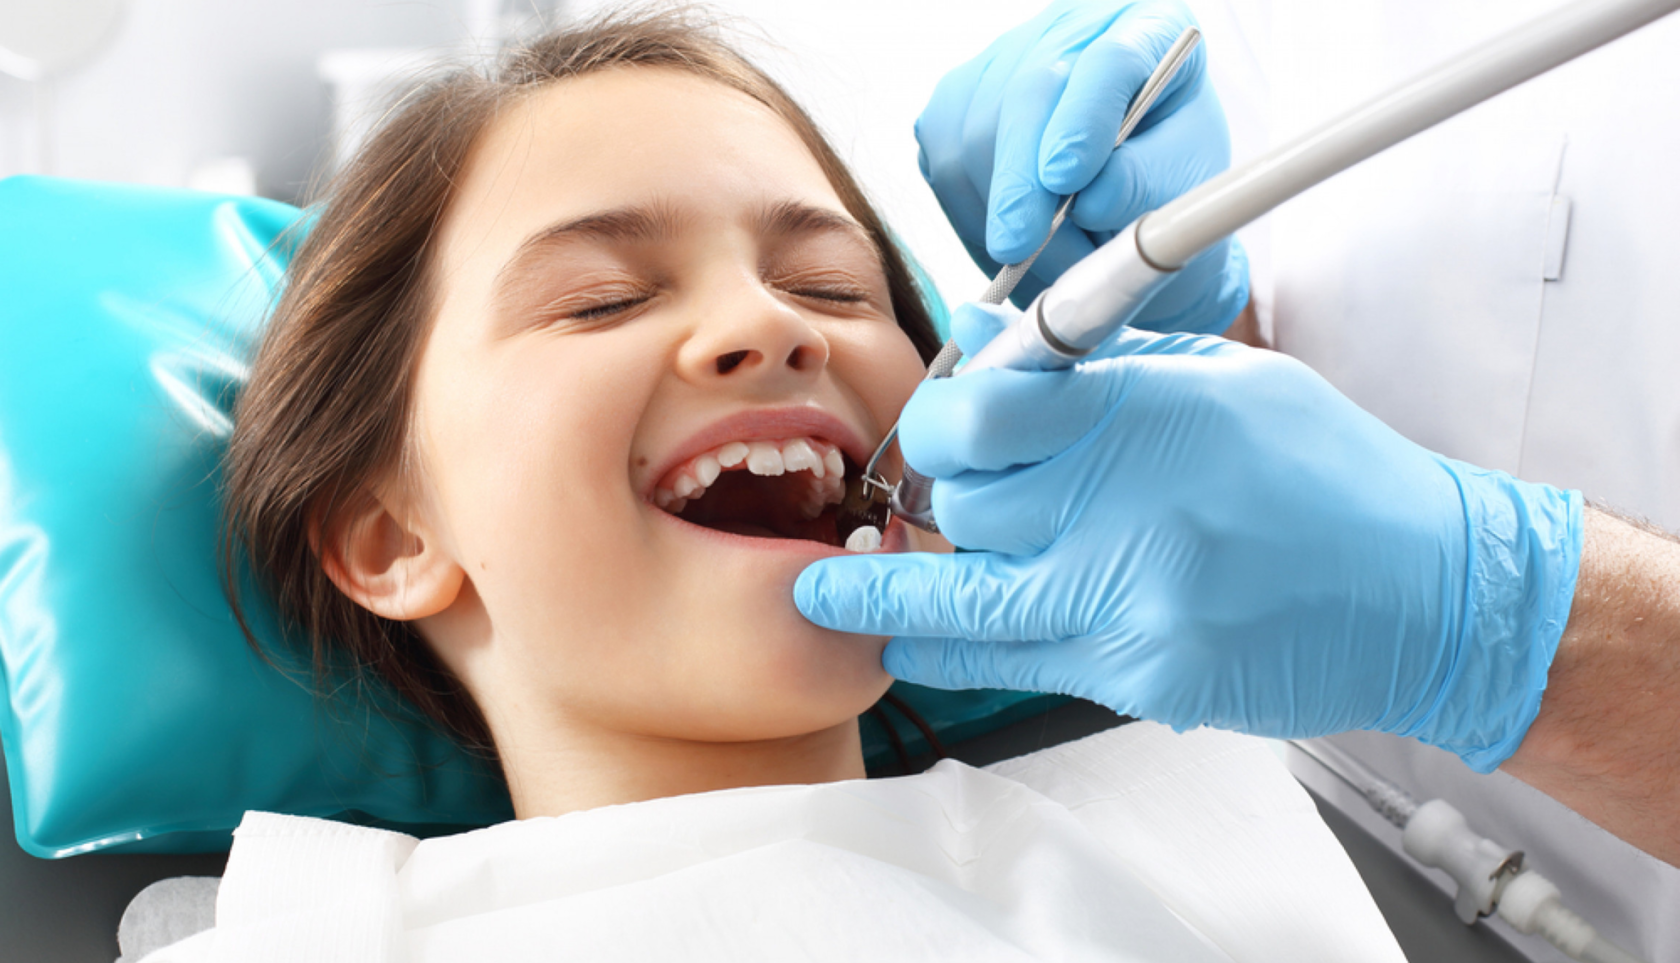 Лечение полости рта и зубов. Профессиональная гигиена полости рта. Профессиональная гигиена полости рта у детей. Зубы стоматолог. Гигиена рта у стоматолога.